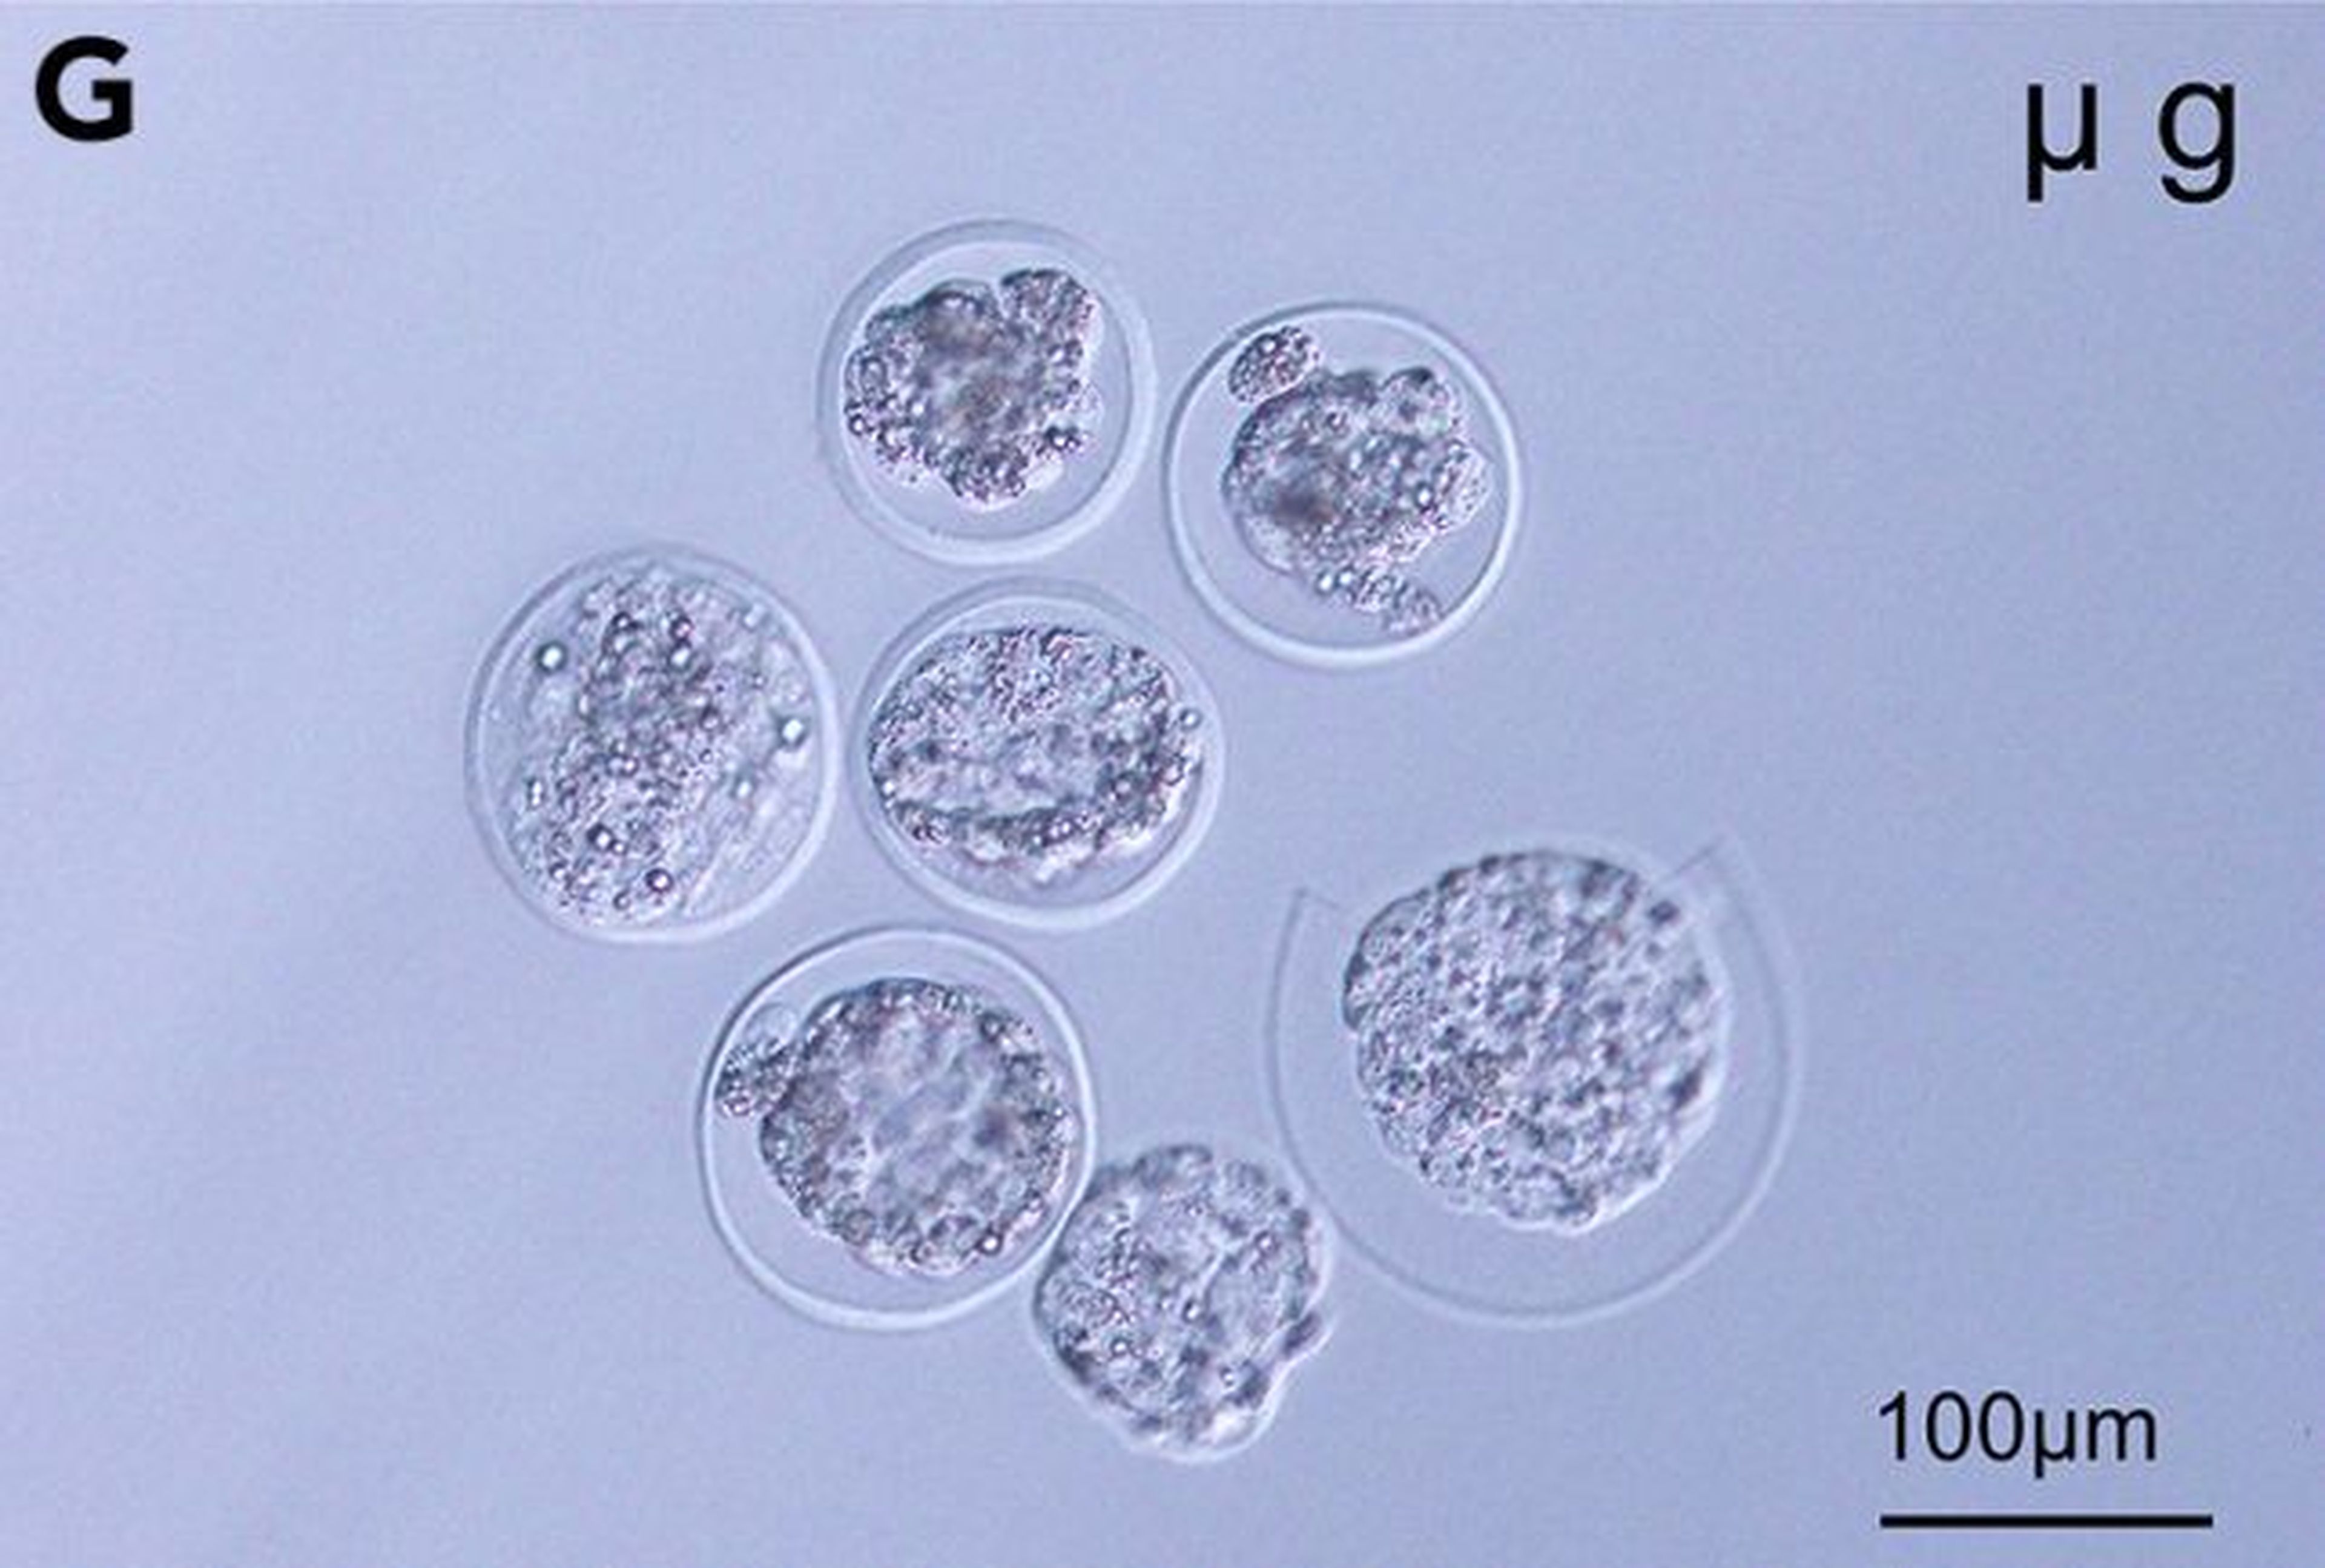 Blastocistos de ratón desarrollados en microgravedad.